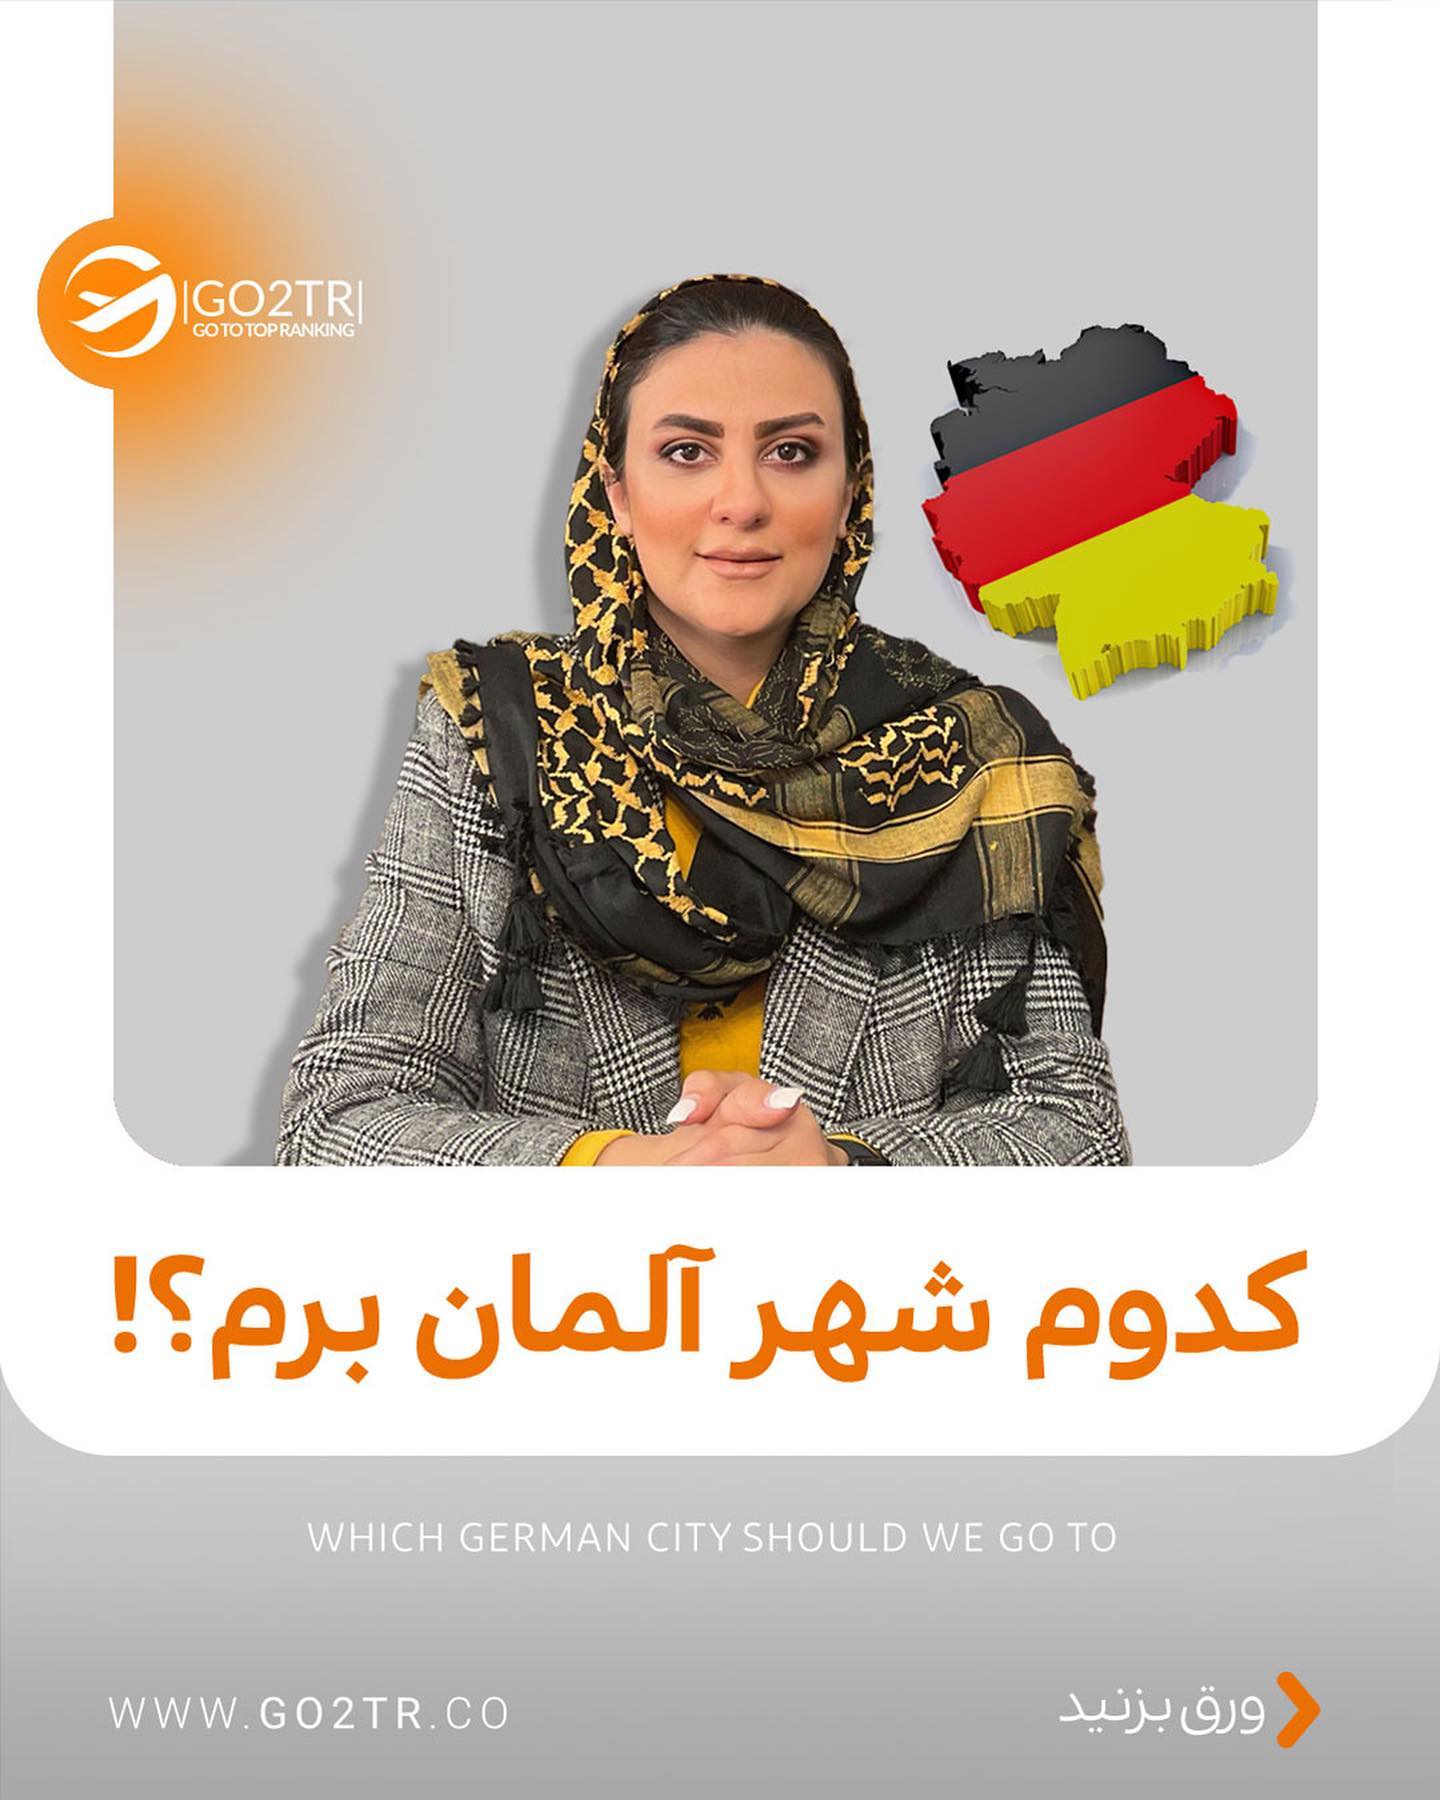 اگه دوستی تو آلمان داری تگش کن تا بگه کدوم شهر بهتره 🤩🥳 . . طرفدارای تحصیل در 